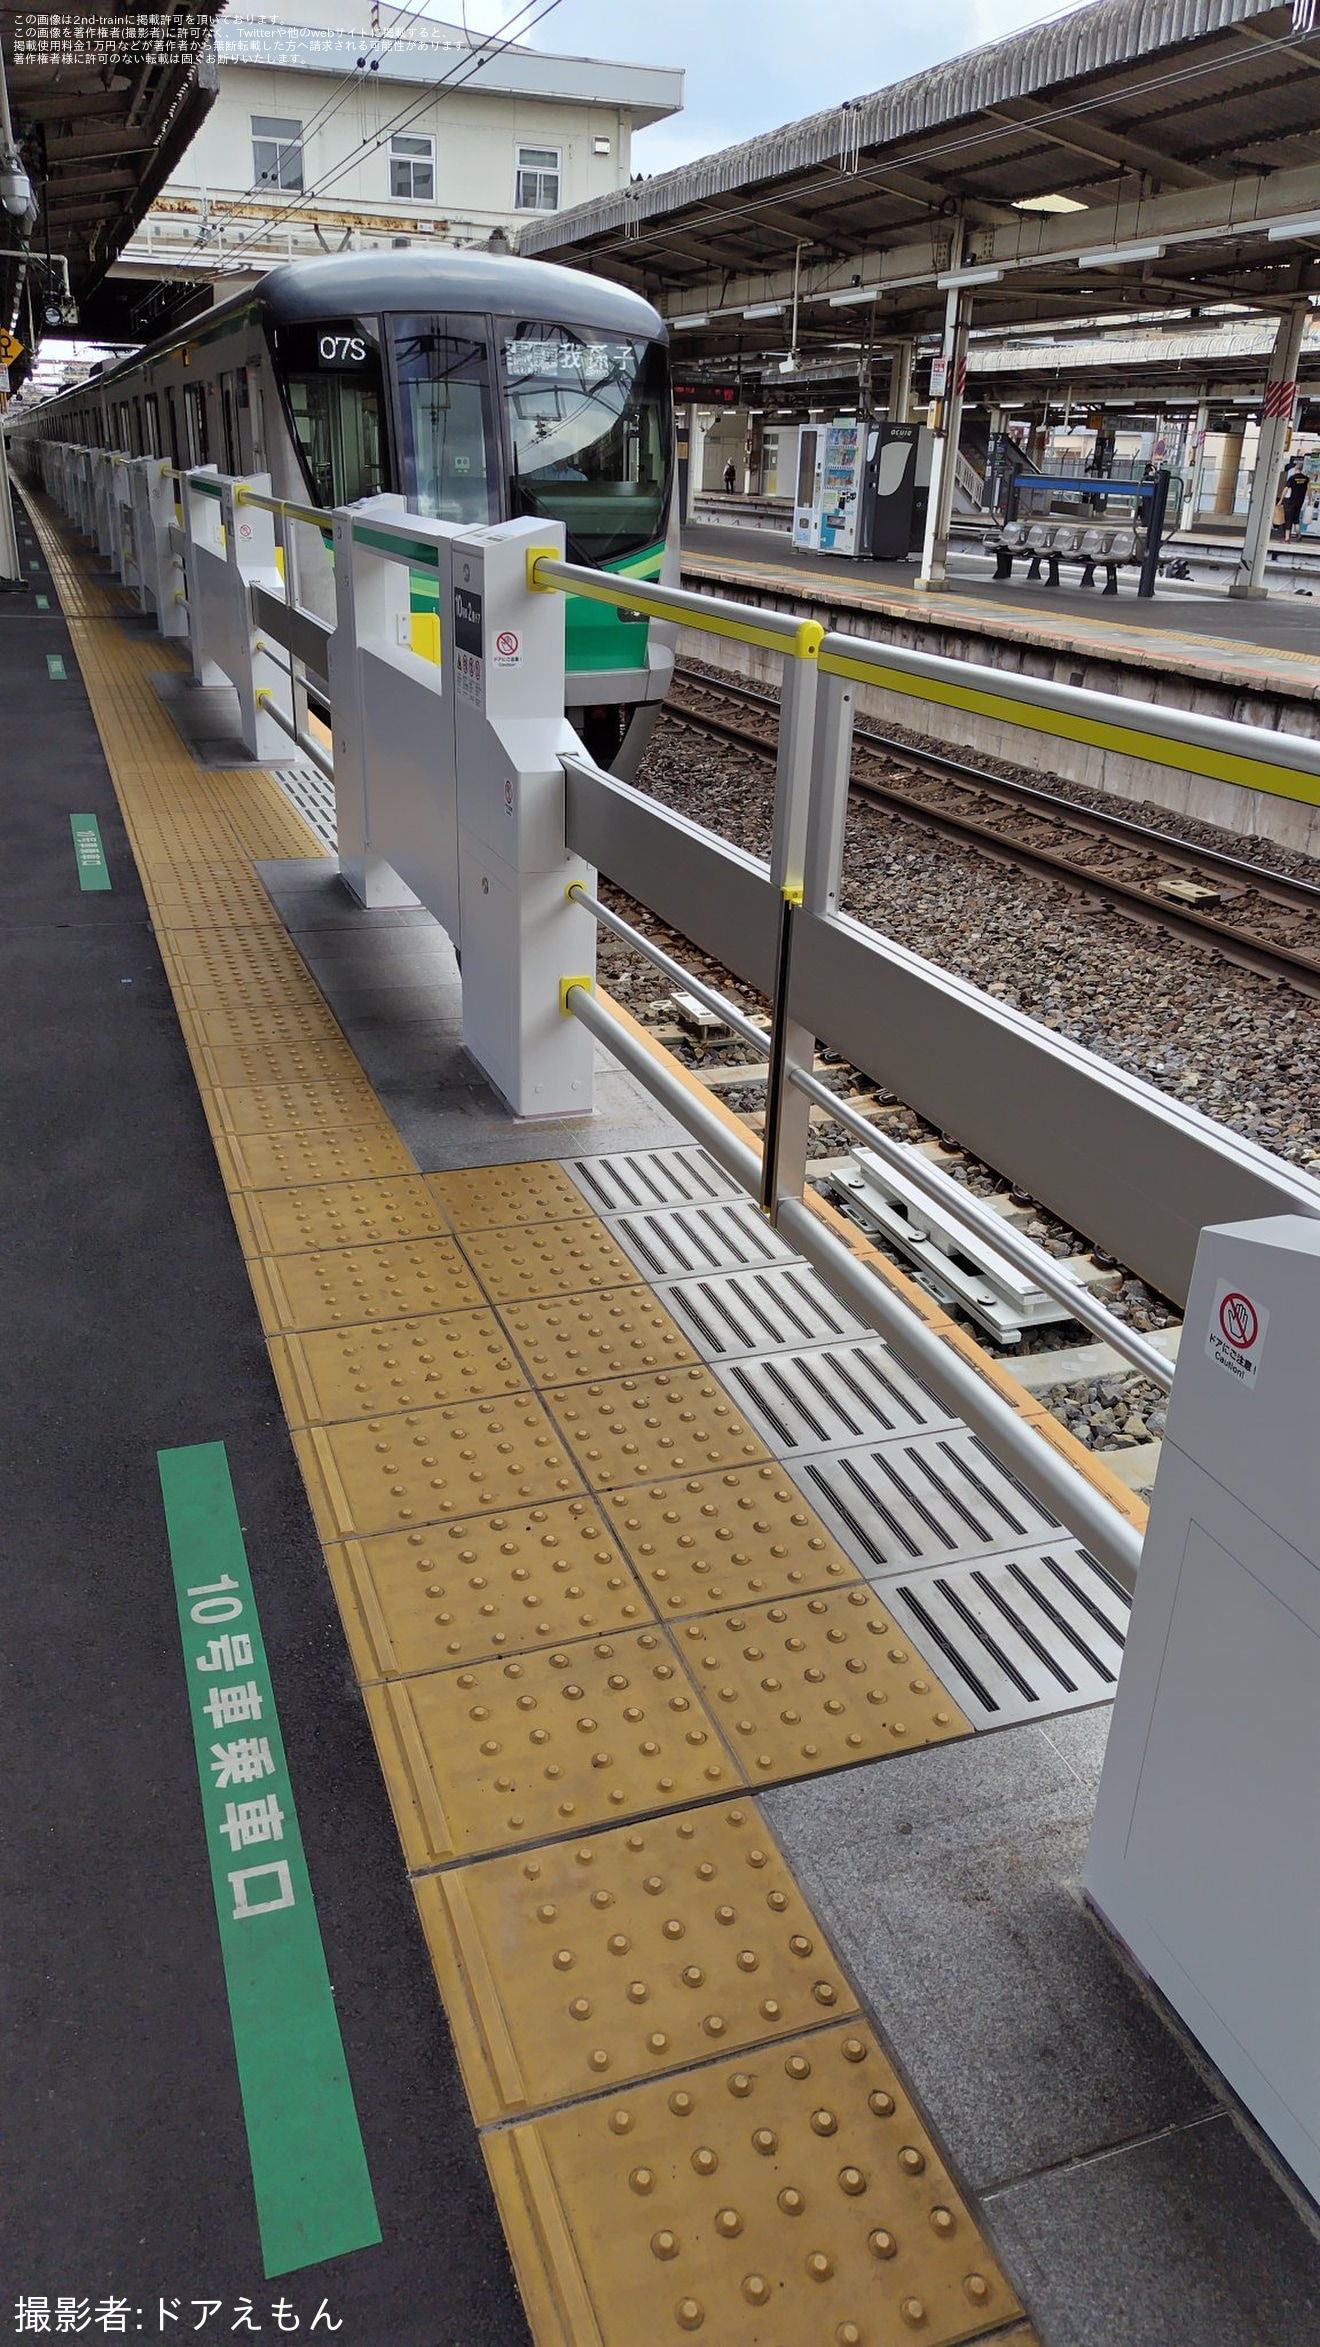 【JR東】常磐緩行線我孫子駅のホームドアが稼働開始の拡大写真